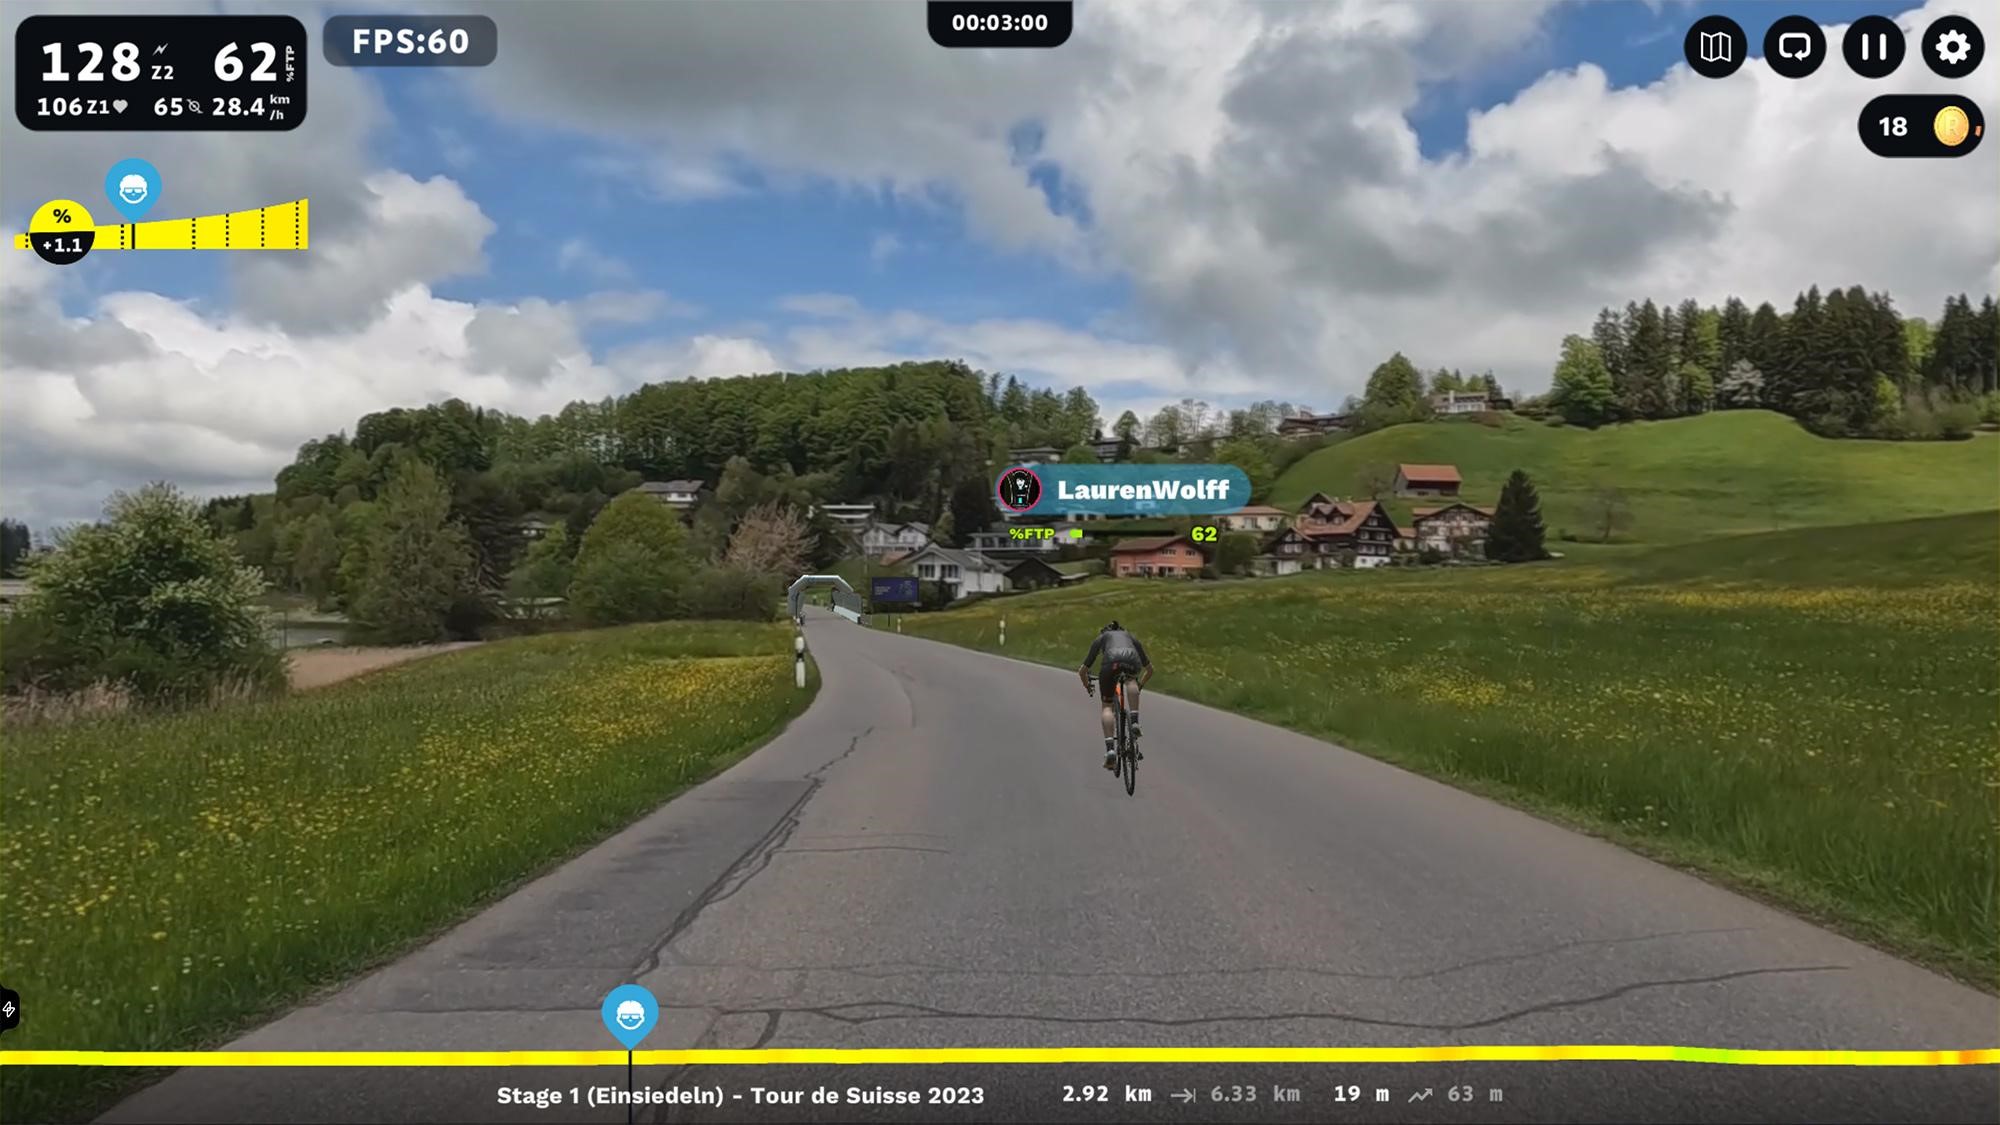 Tour de Suisse Stage 1 TT on ROUVY